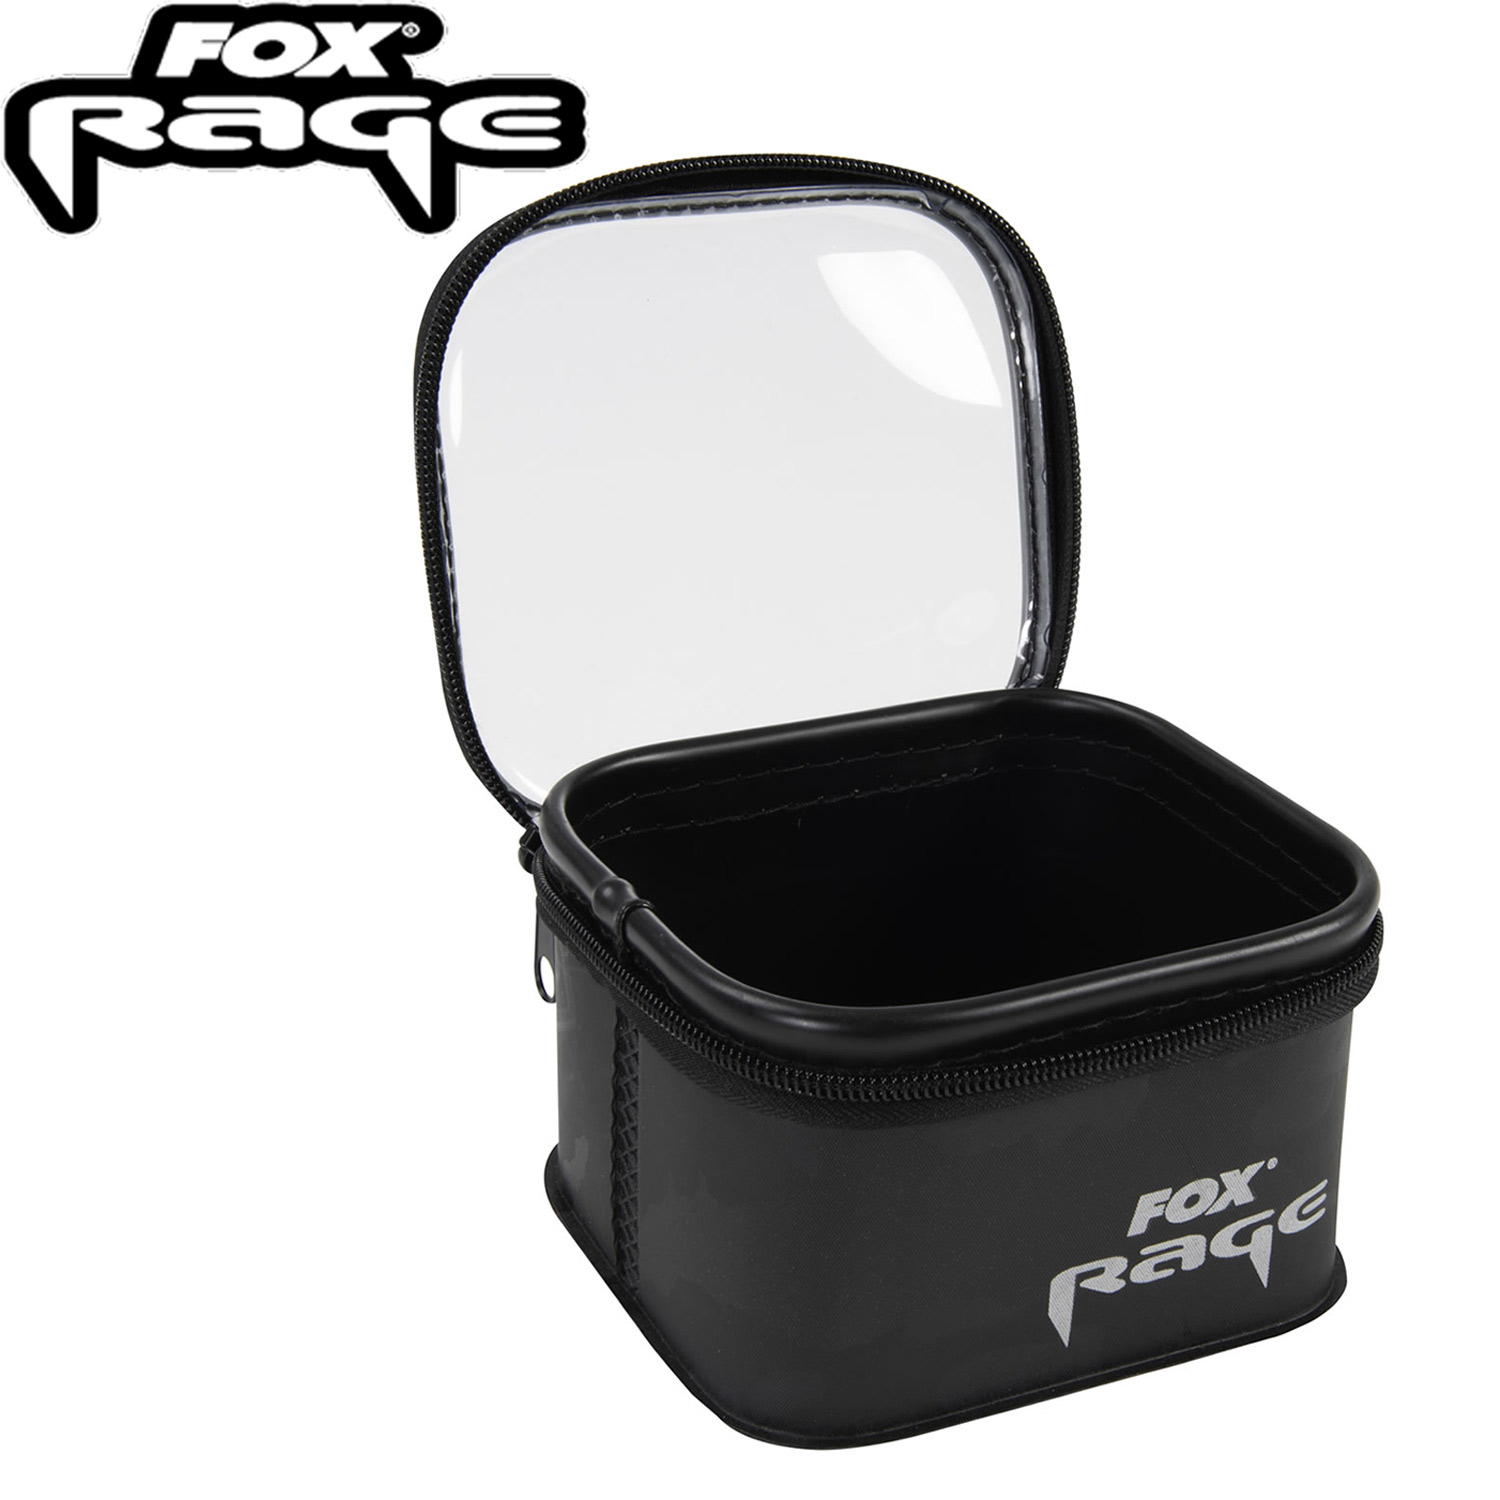 Trousse Fox Rage Camo Accessory Bag SMALL